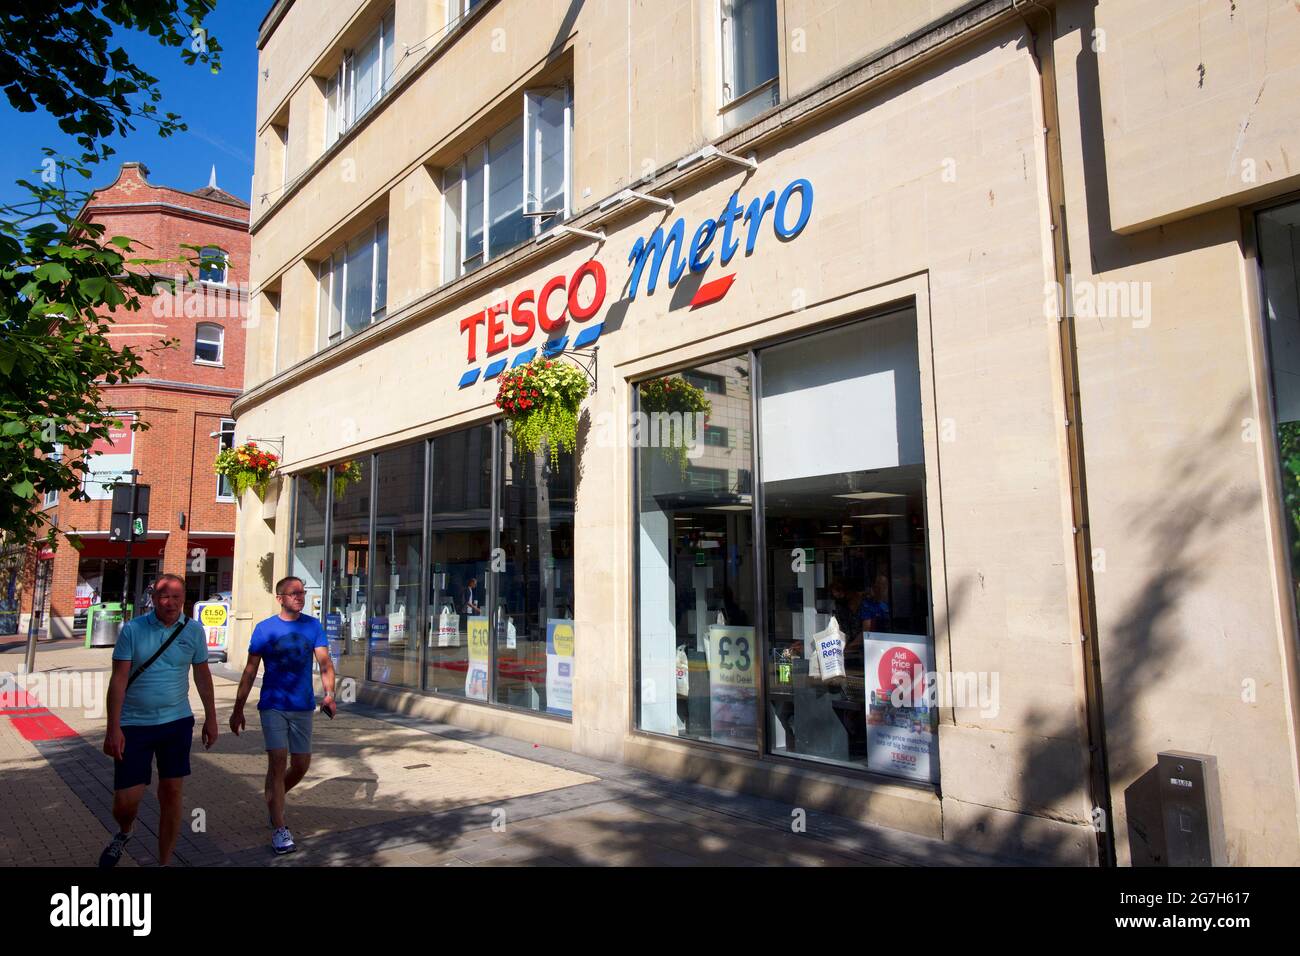 Tesco Metro store Stock Photo